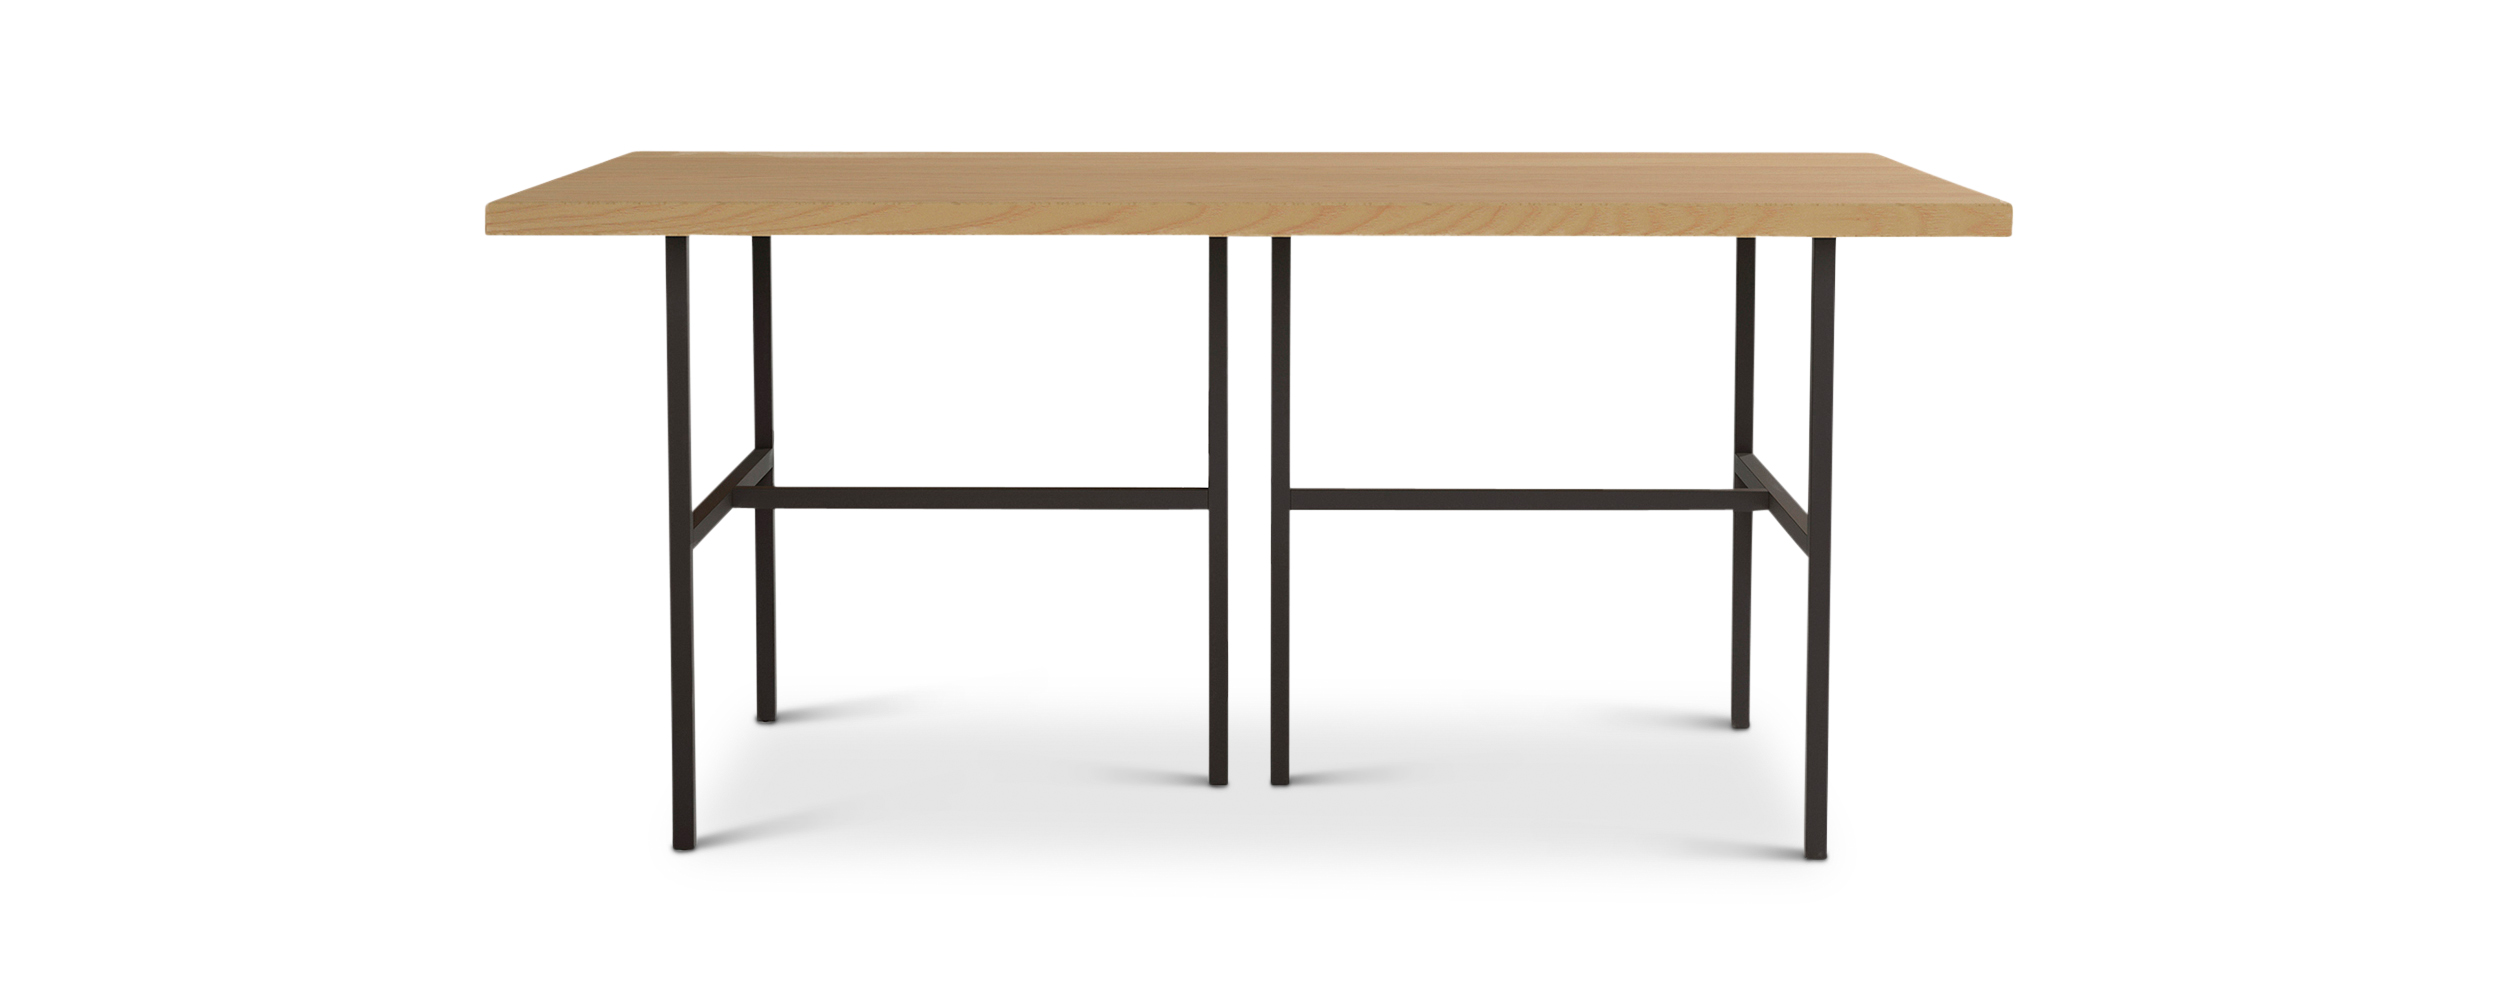 Series 828 black metal and wood table